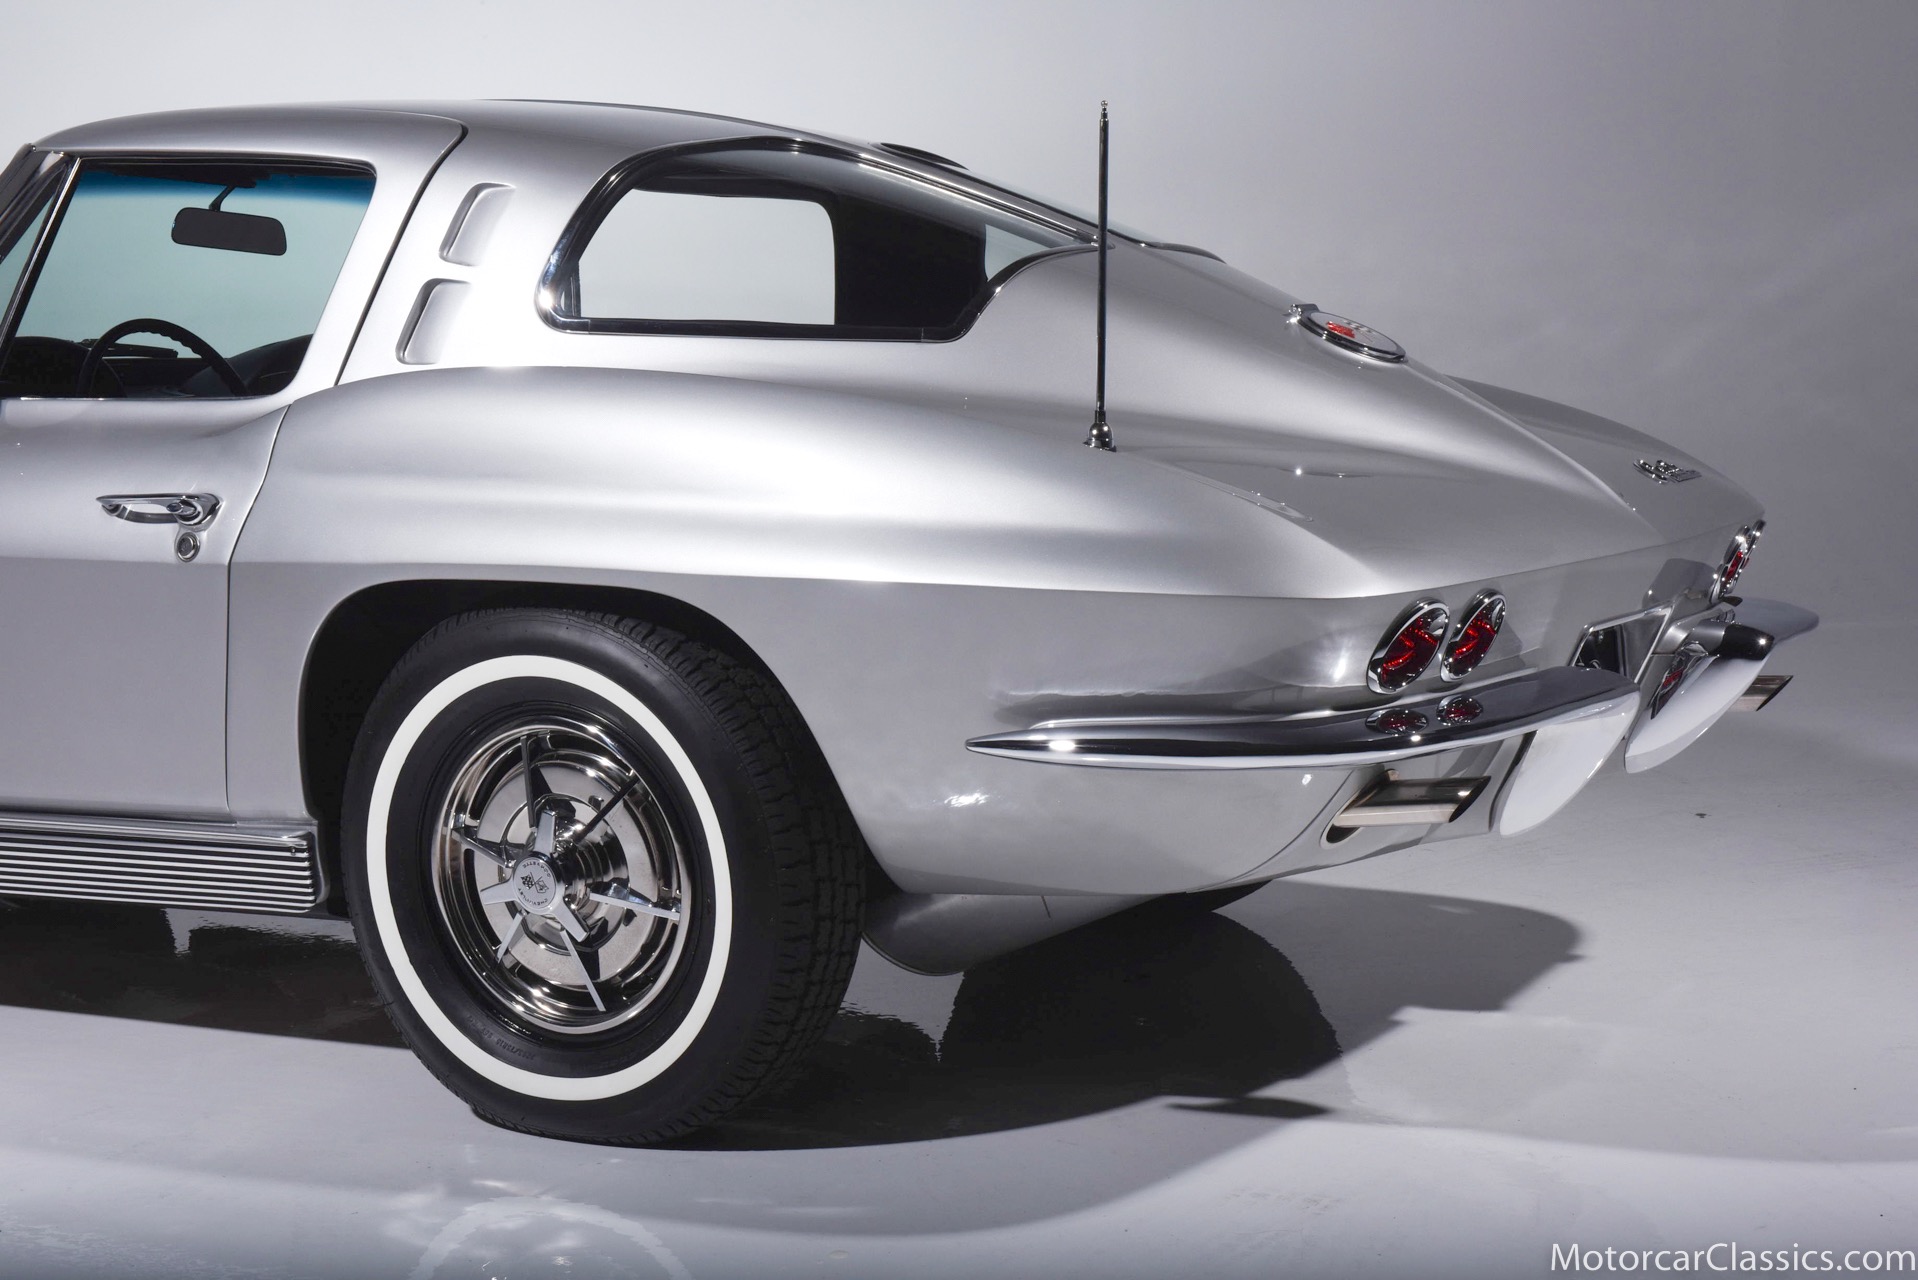 1963 Chevrolet Corvette 